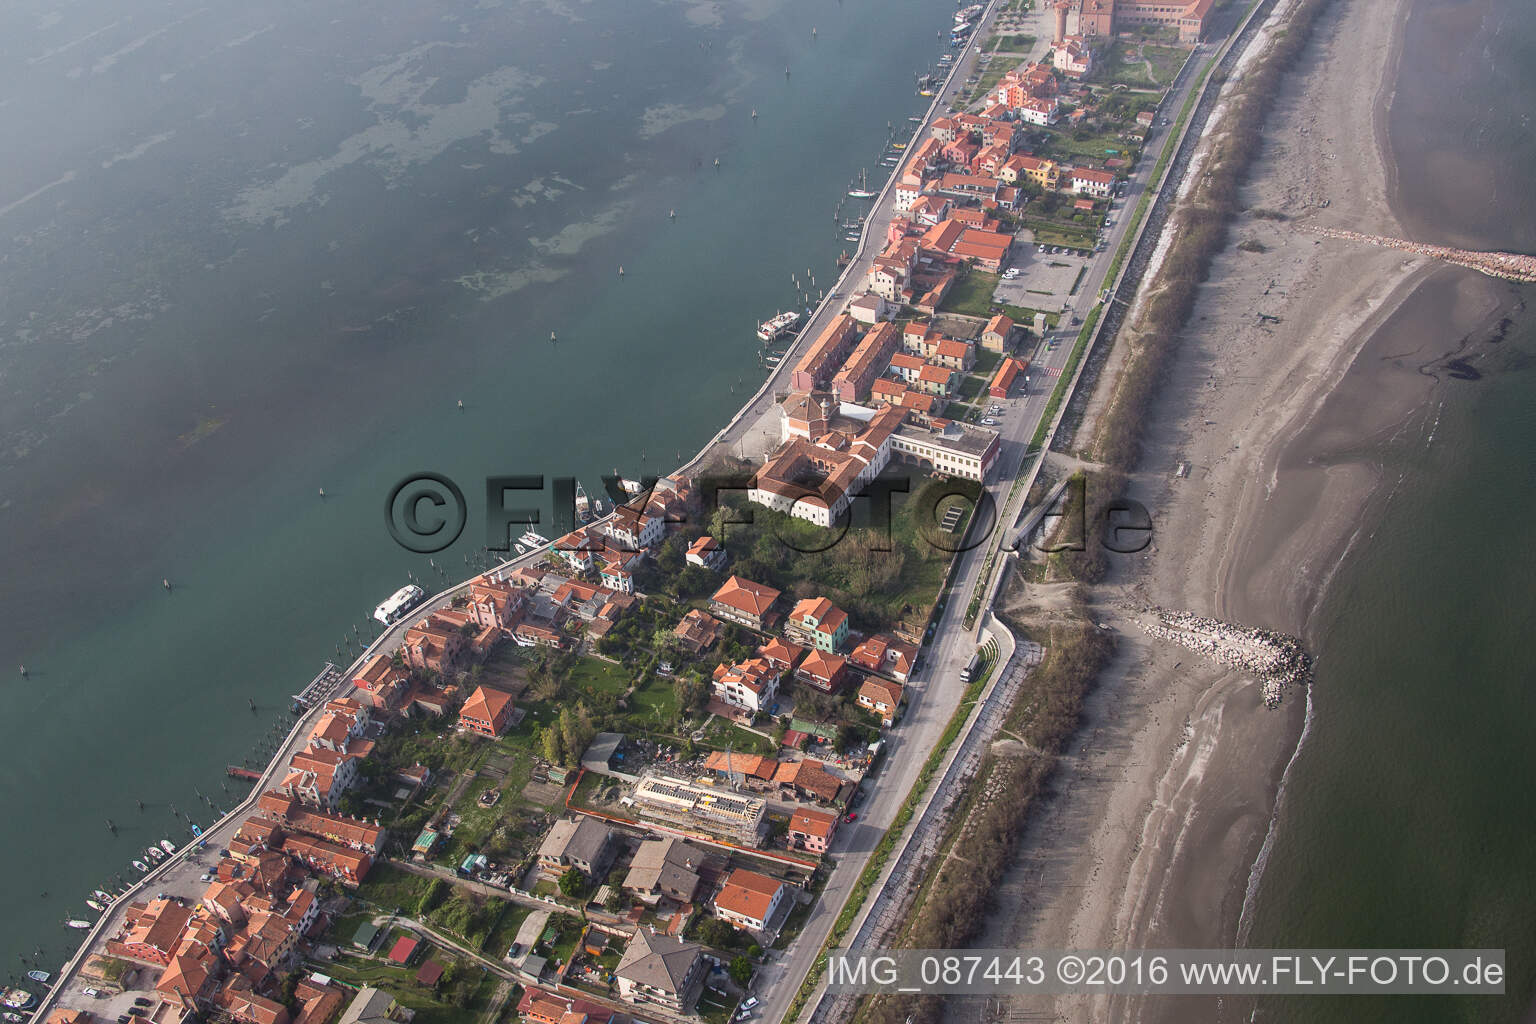 Drohnenbild von Siedlungsgebiet im Ortsteil Pellestrina in Venedig in Venetien, Italien